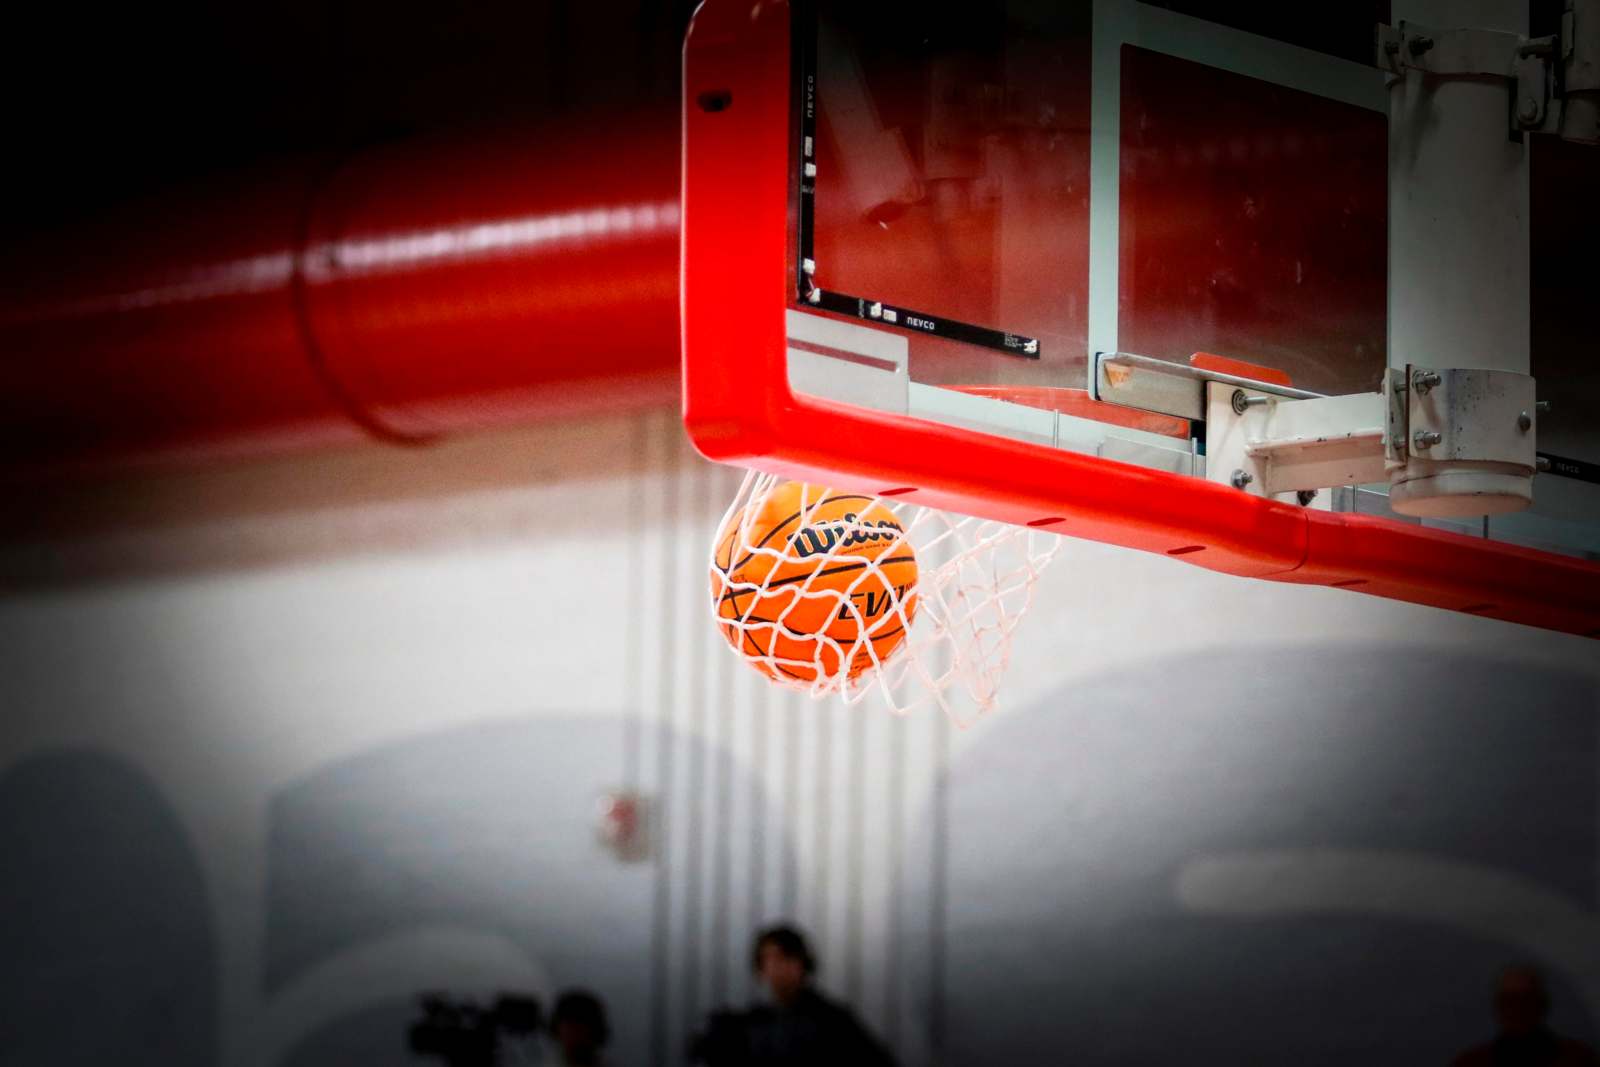 a basketball going through a net